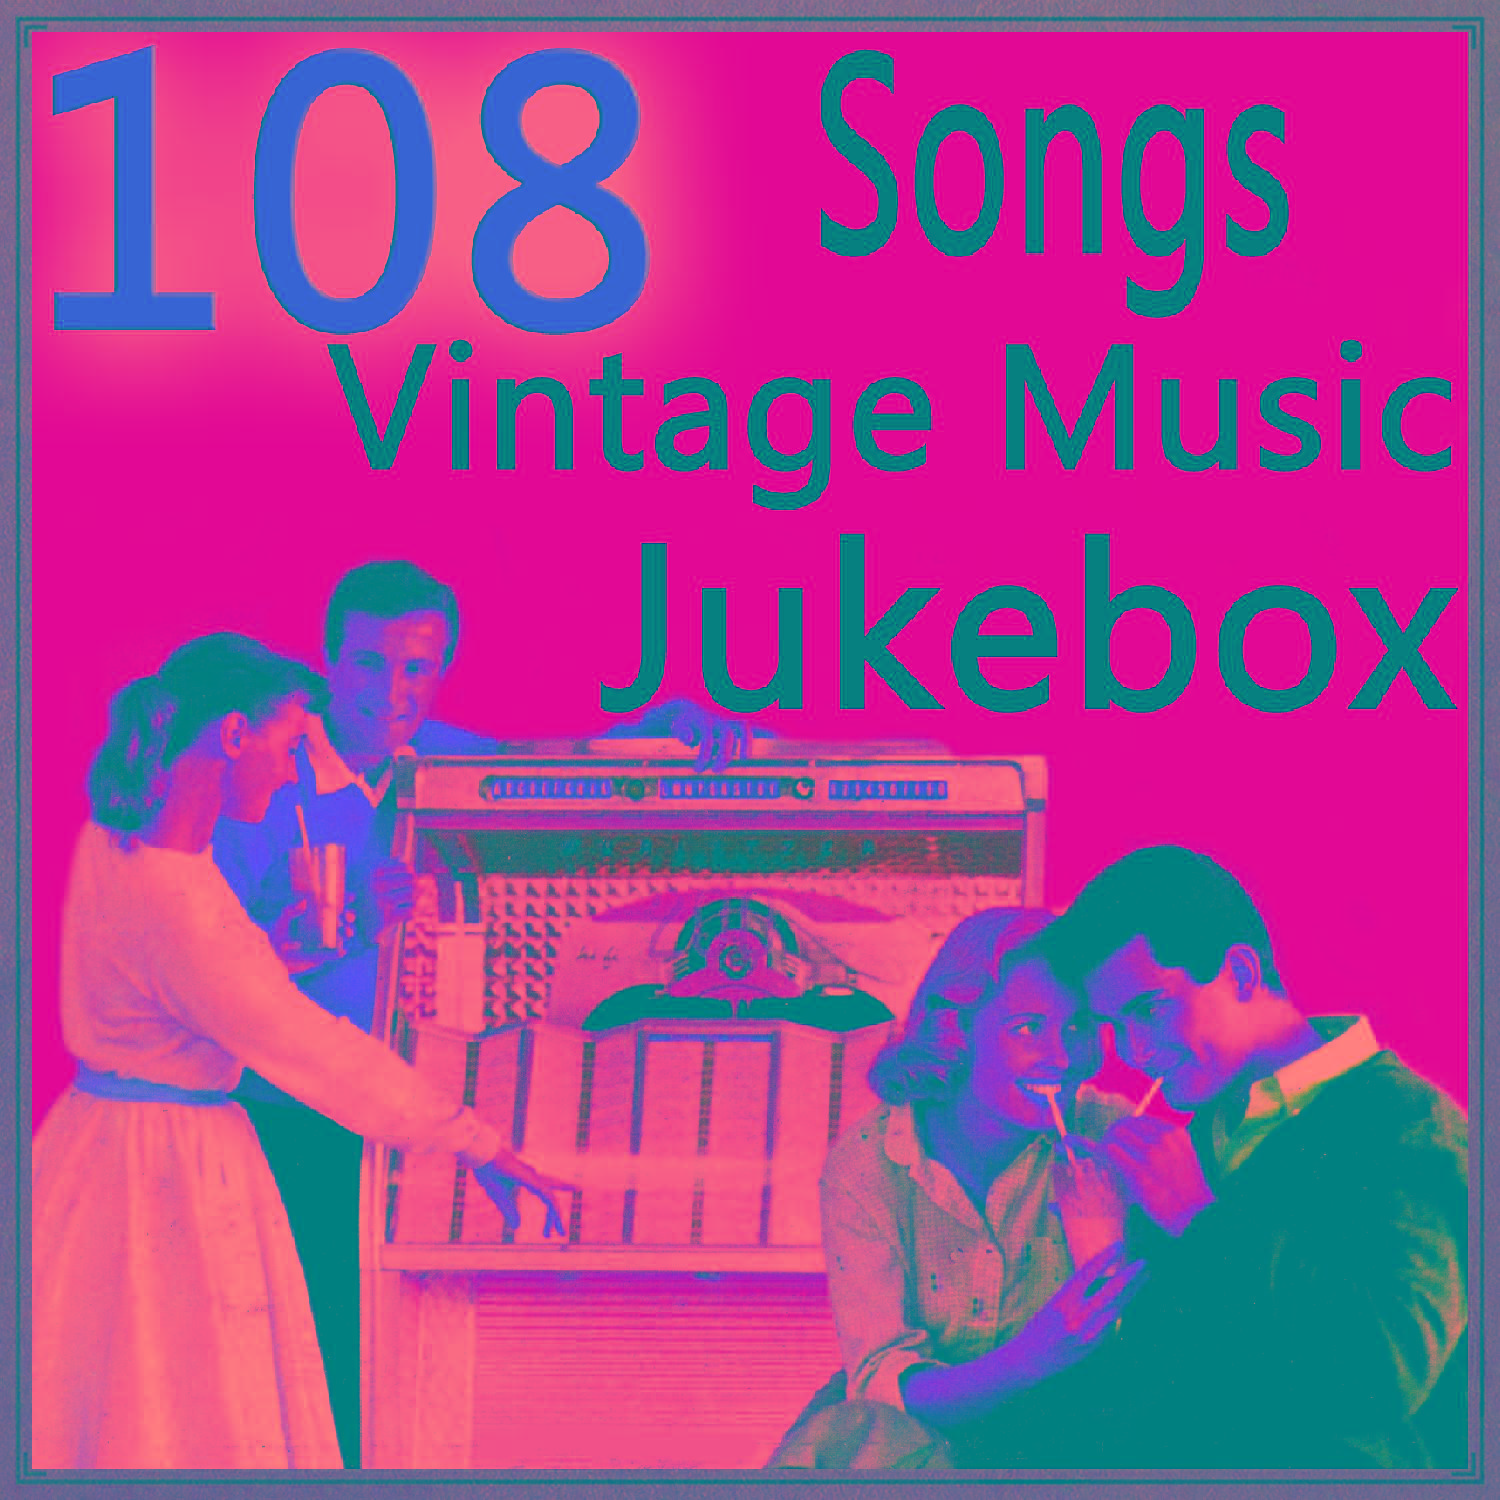 108 Songs Vintage Music Jukebox